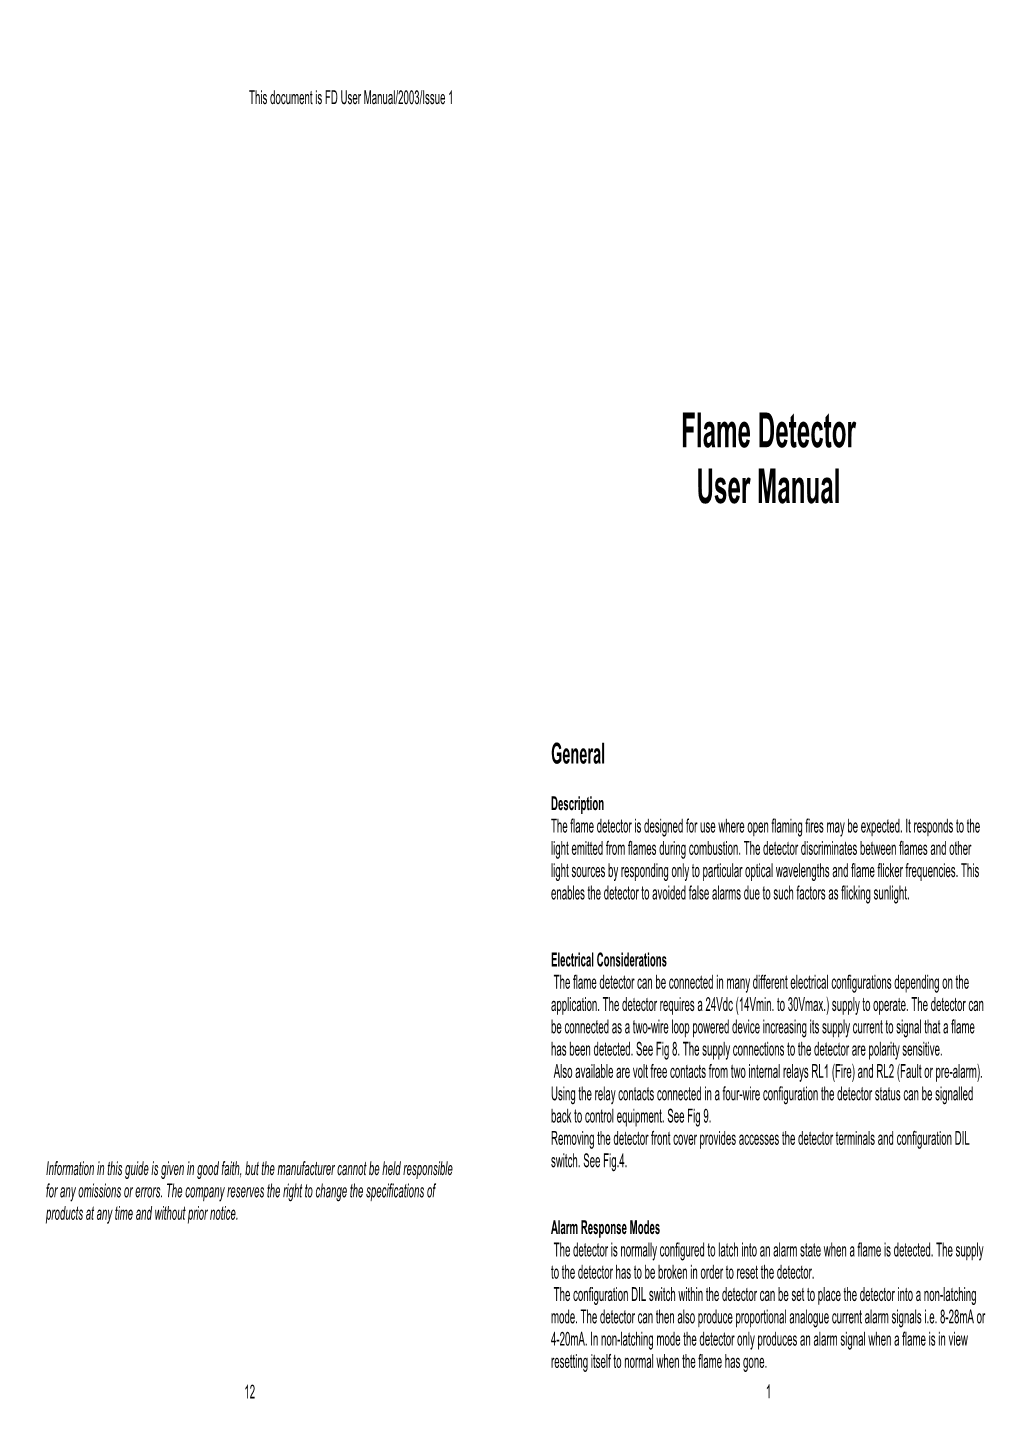 Flame Detector User Manual